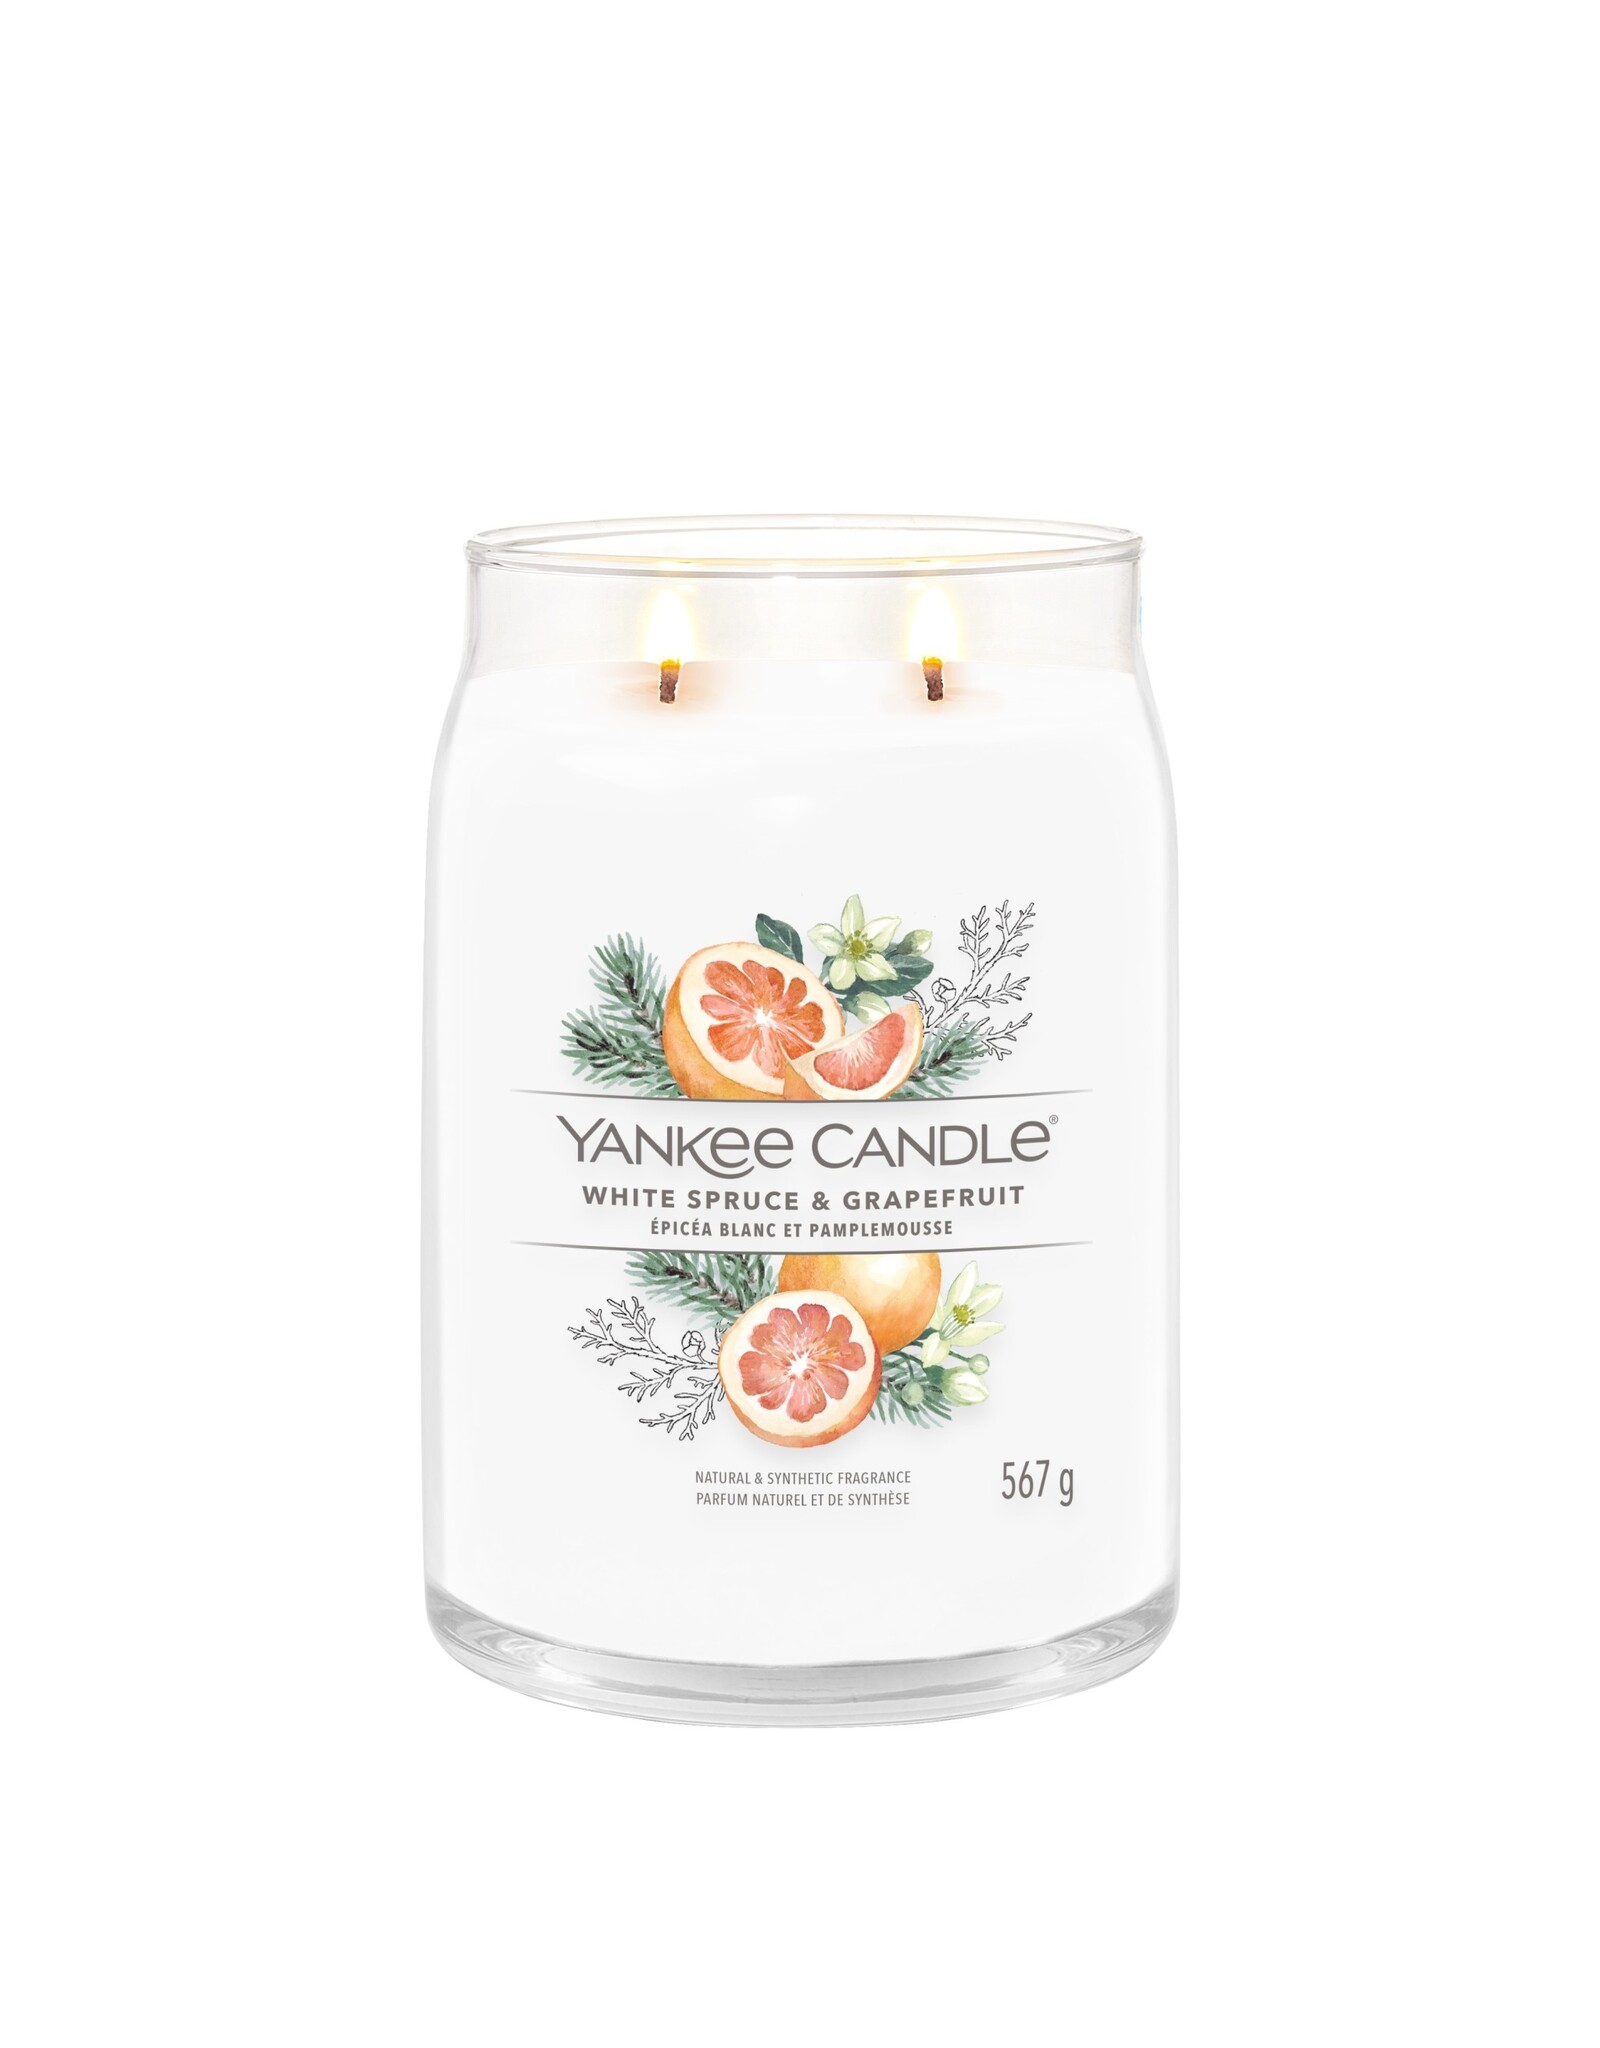 Yankee Candle White Spruce & Grapefruit - Signature Large Jar